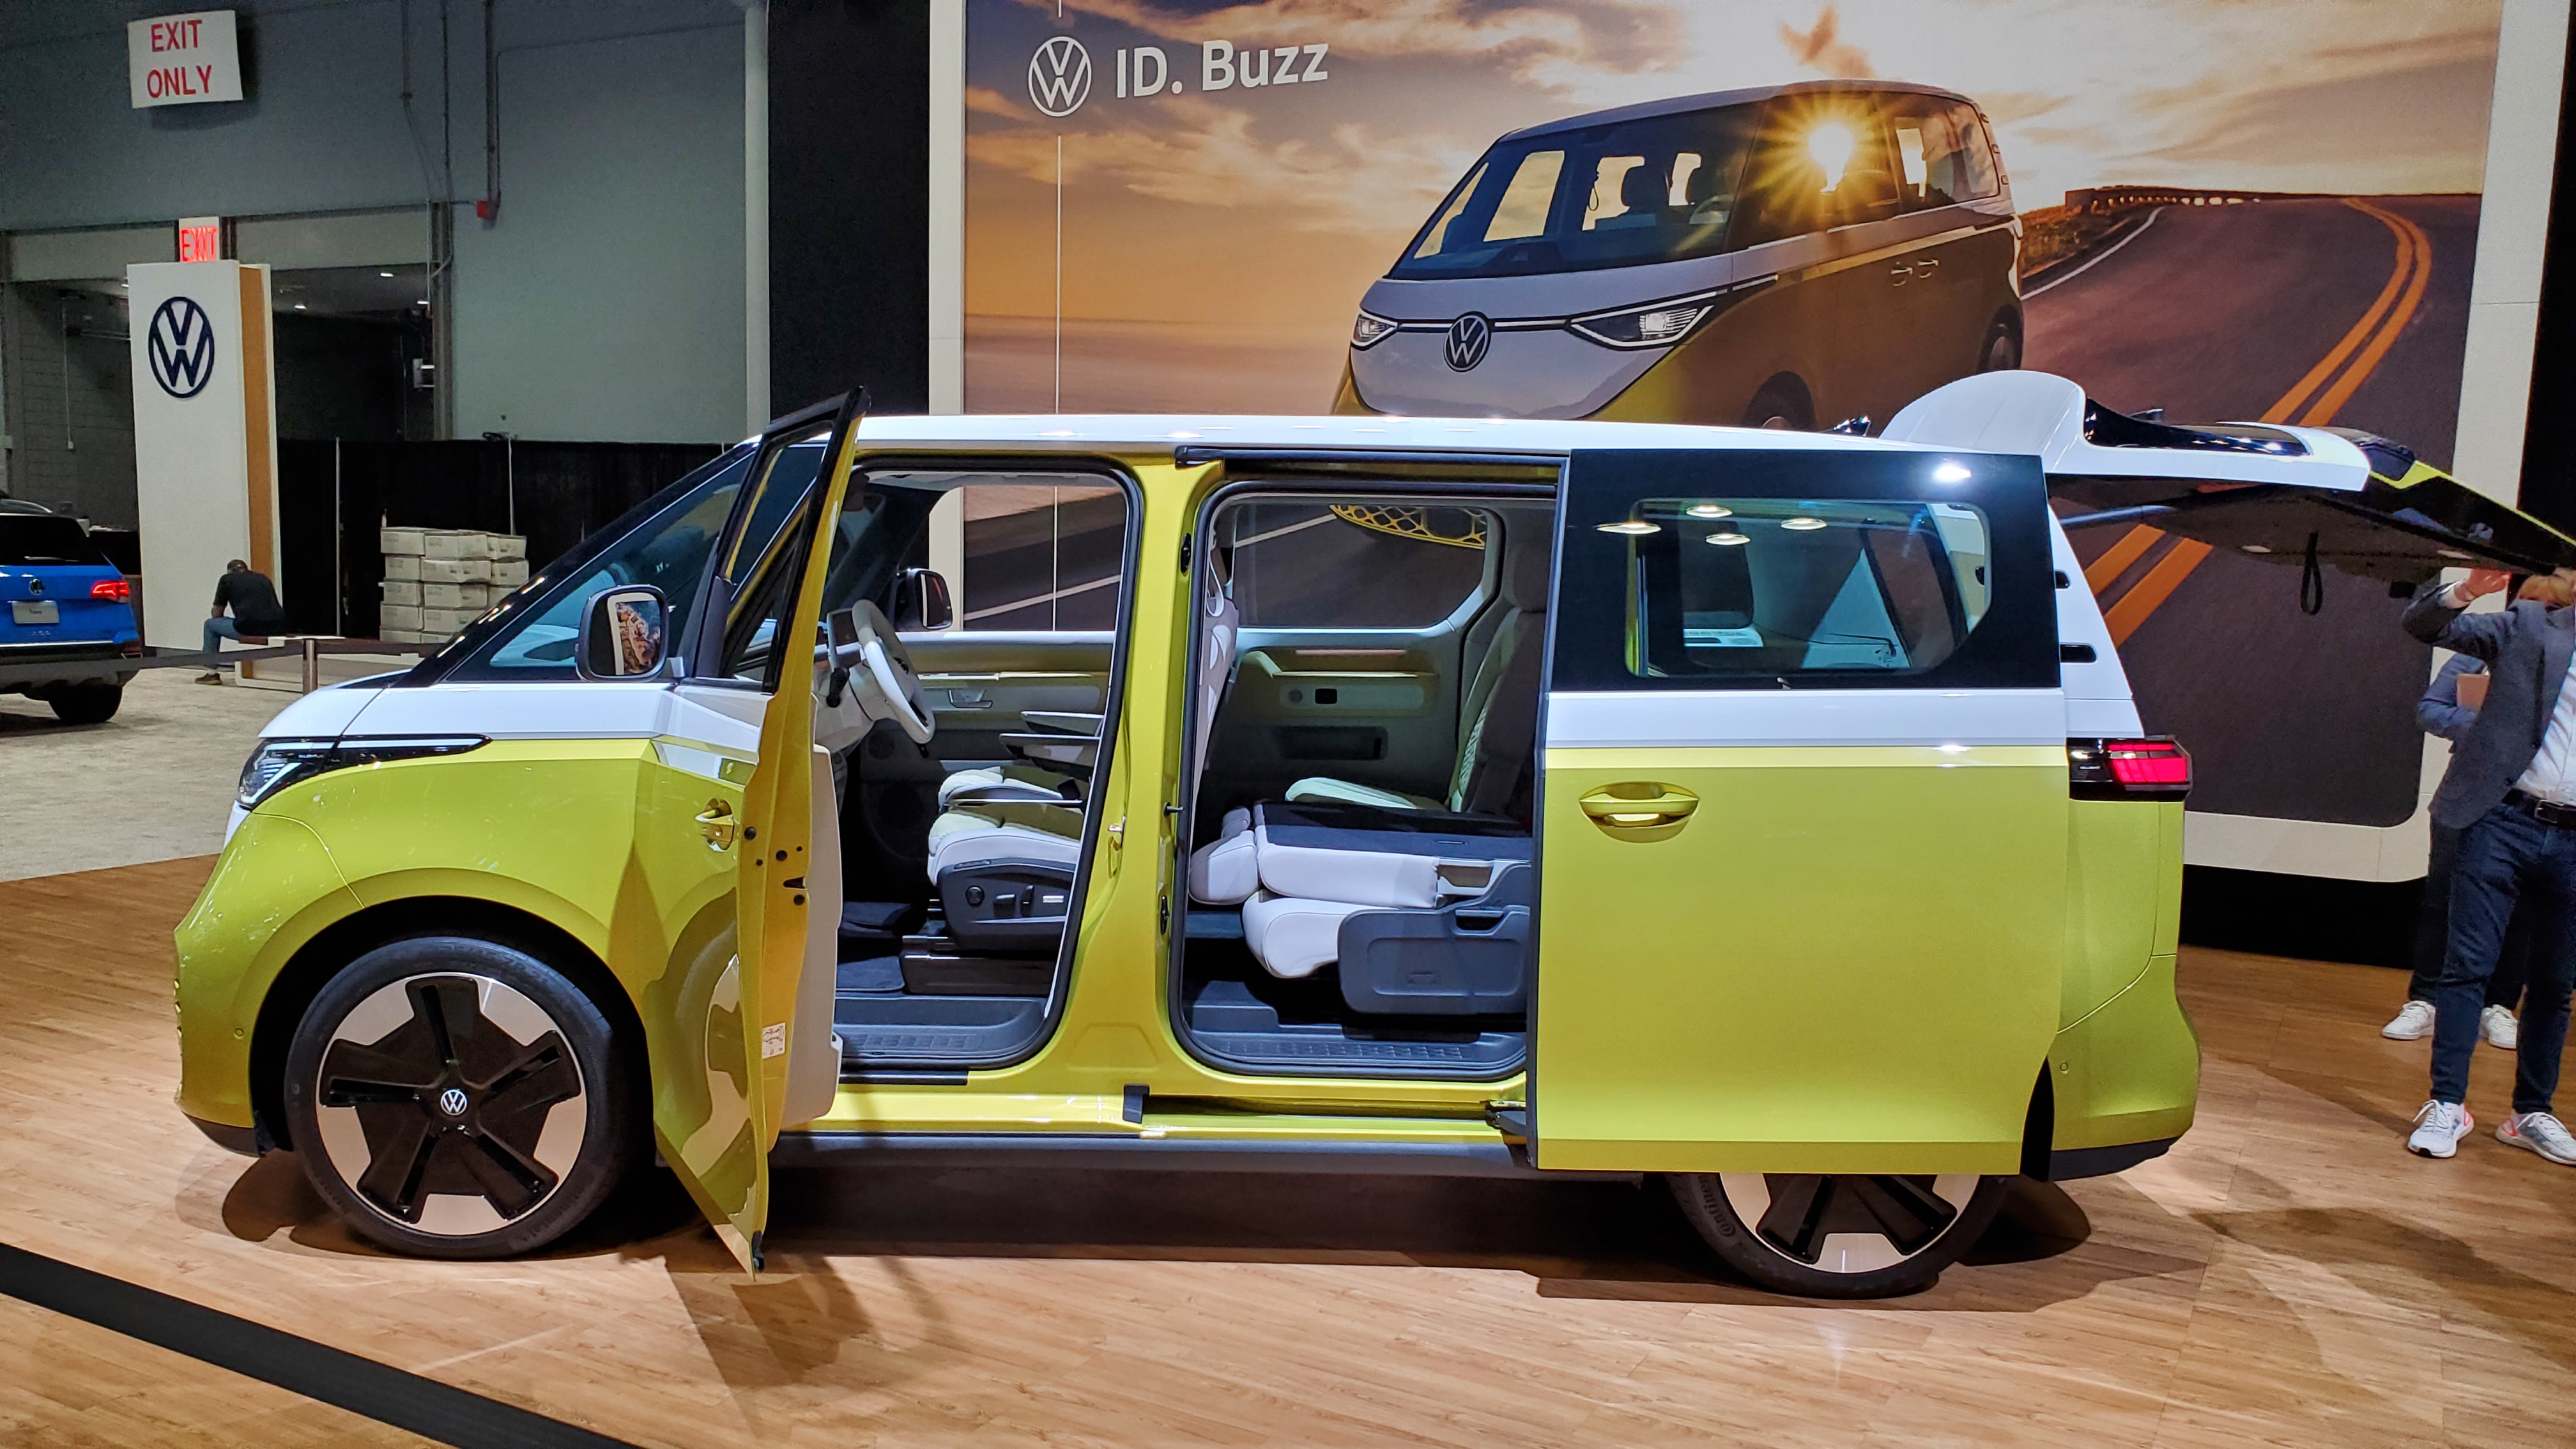 Volkswagen_ID.Buzz-2022-04-14 10.53.11-open_profile-.jpg